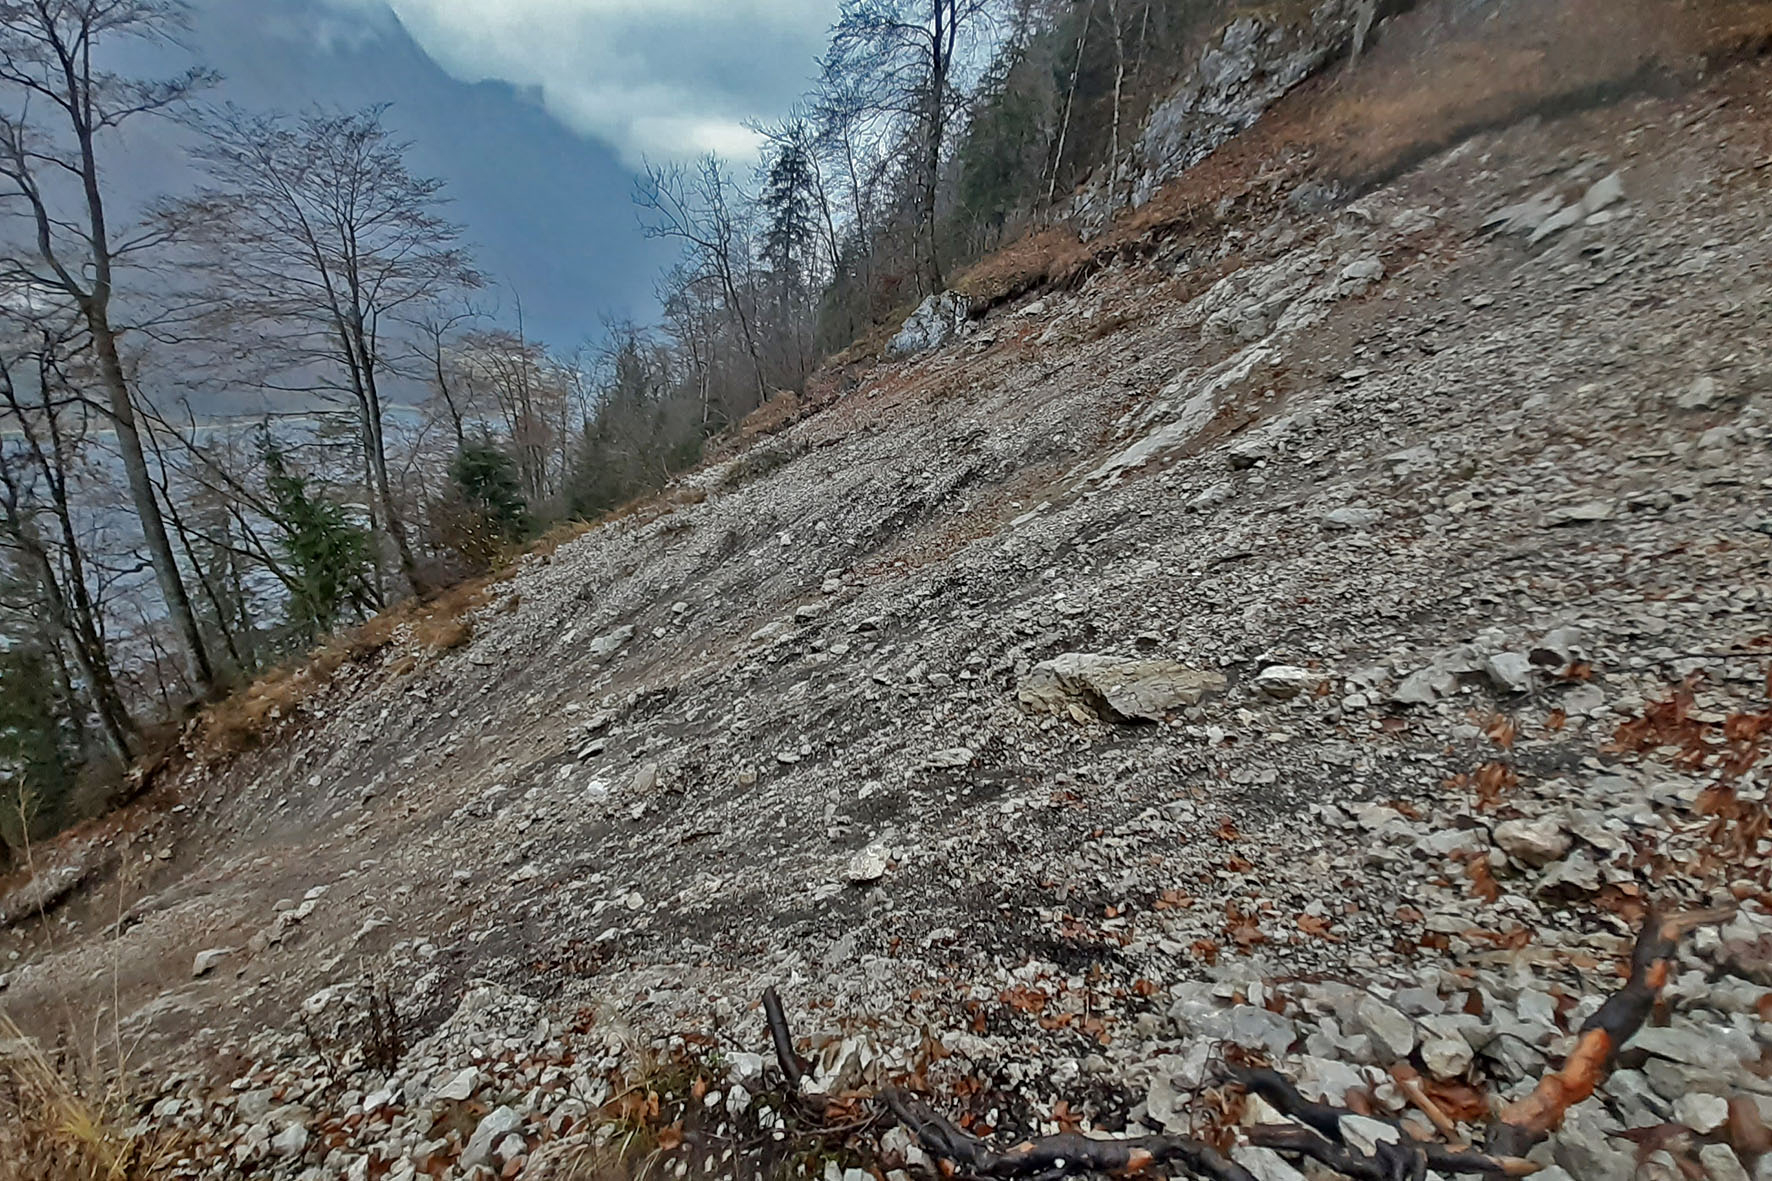 Pressebild: Nach dem Murenabgang im Jahr 2019: Der Kaunersteig ist im unteren Teil massiv besch��digt, die Steinschlaggefahr enorm.